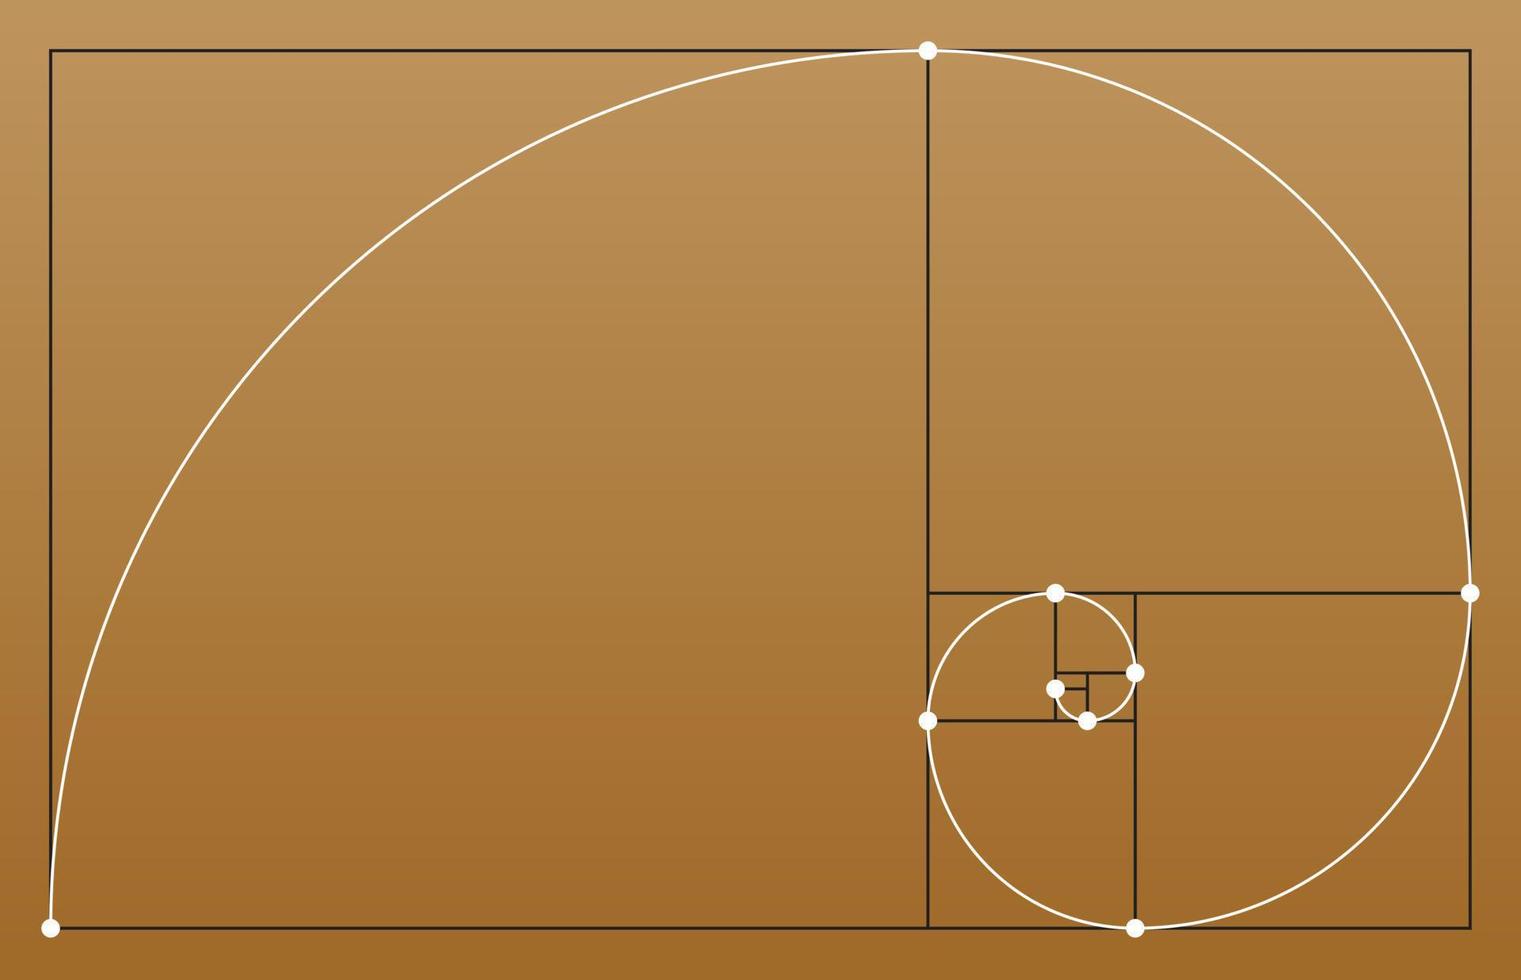 gyllene snittet. geometriska former. cirklar i gyllene proportioner. vektor illustration.